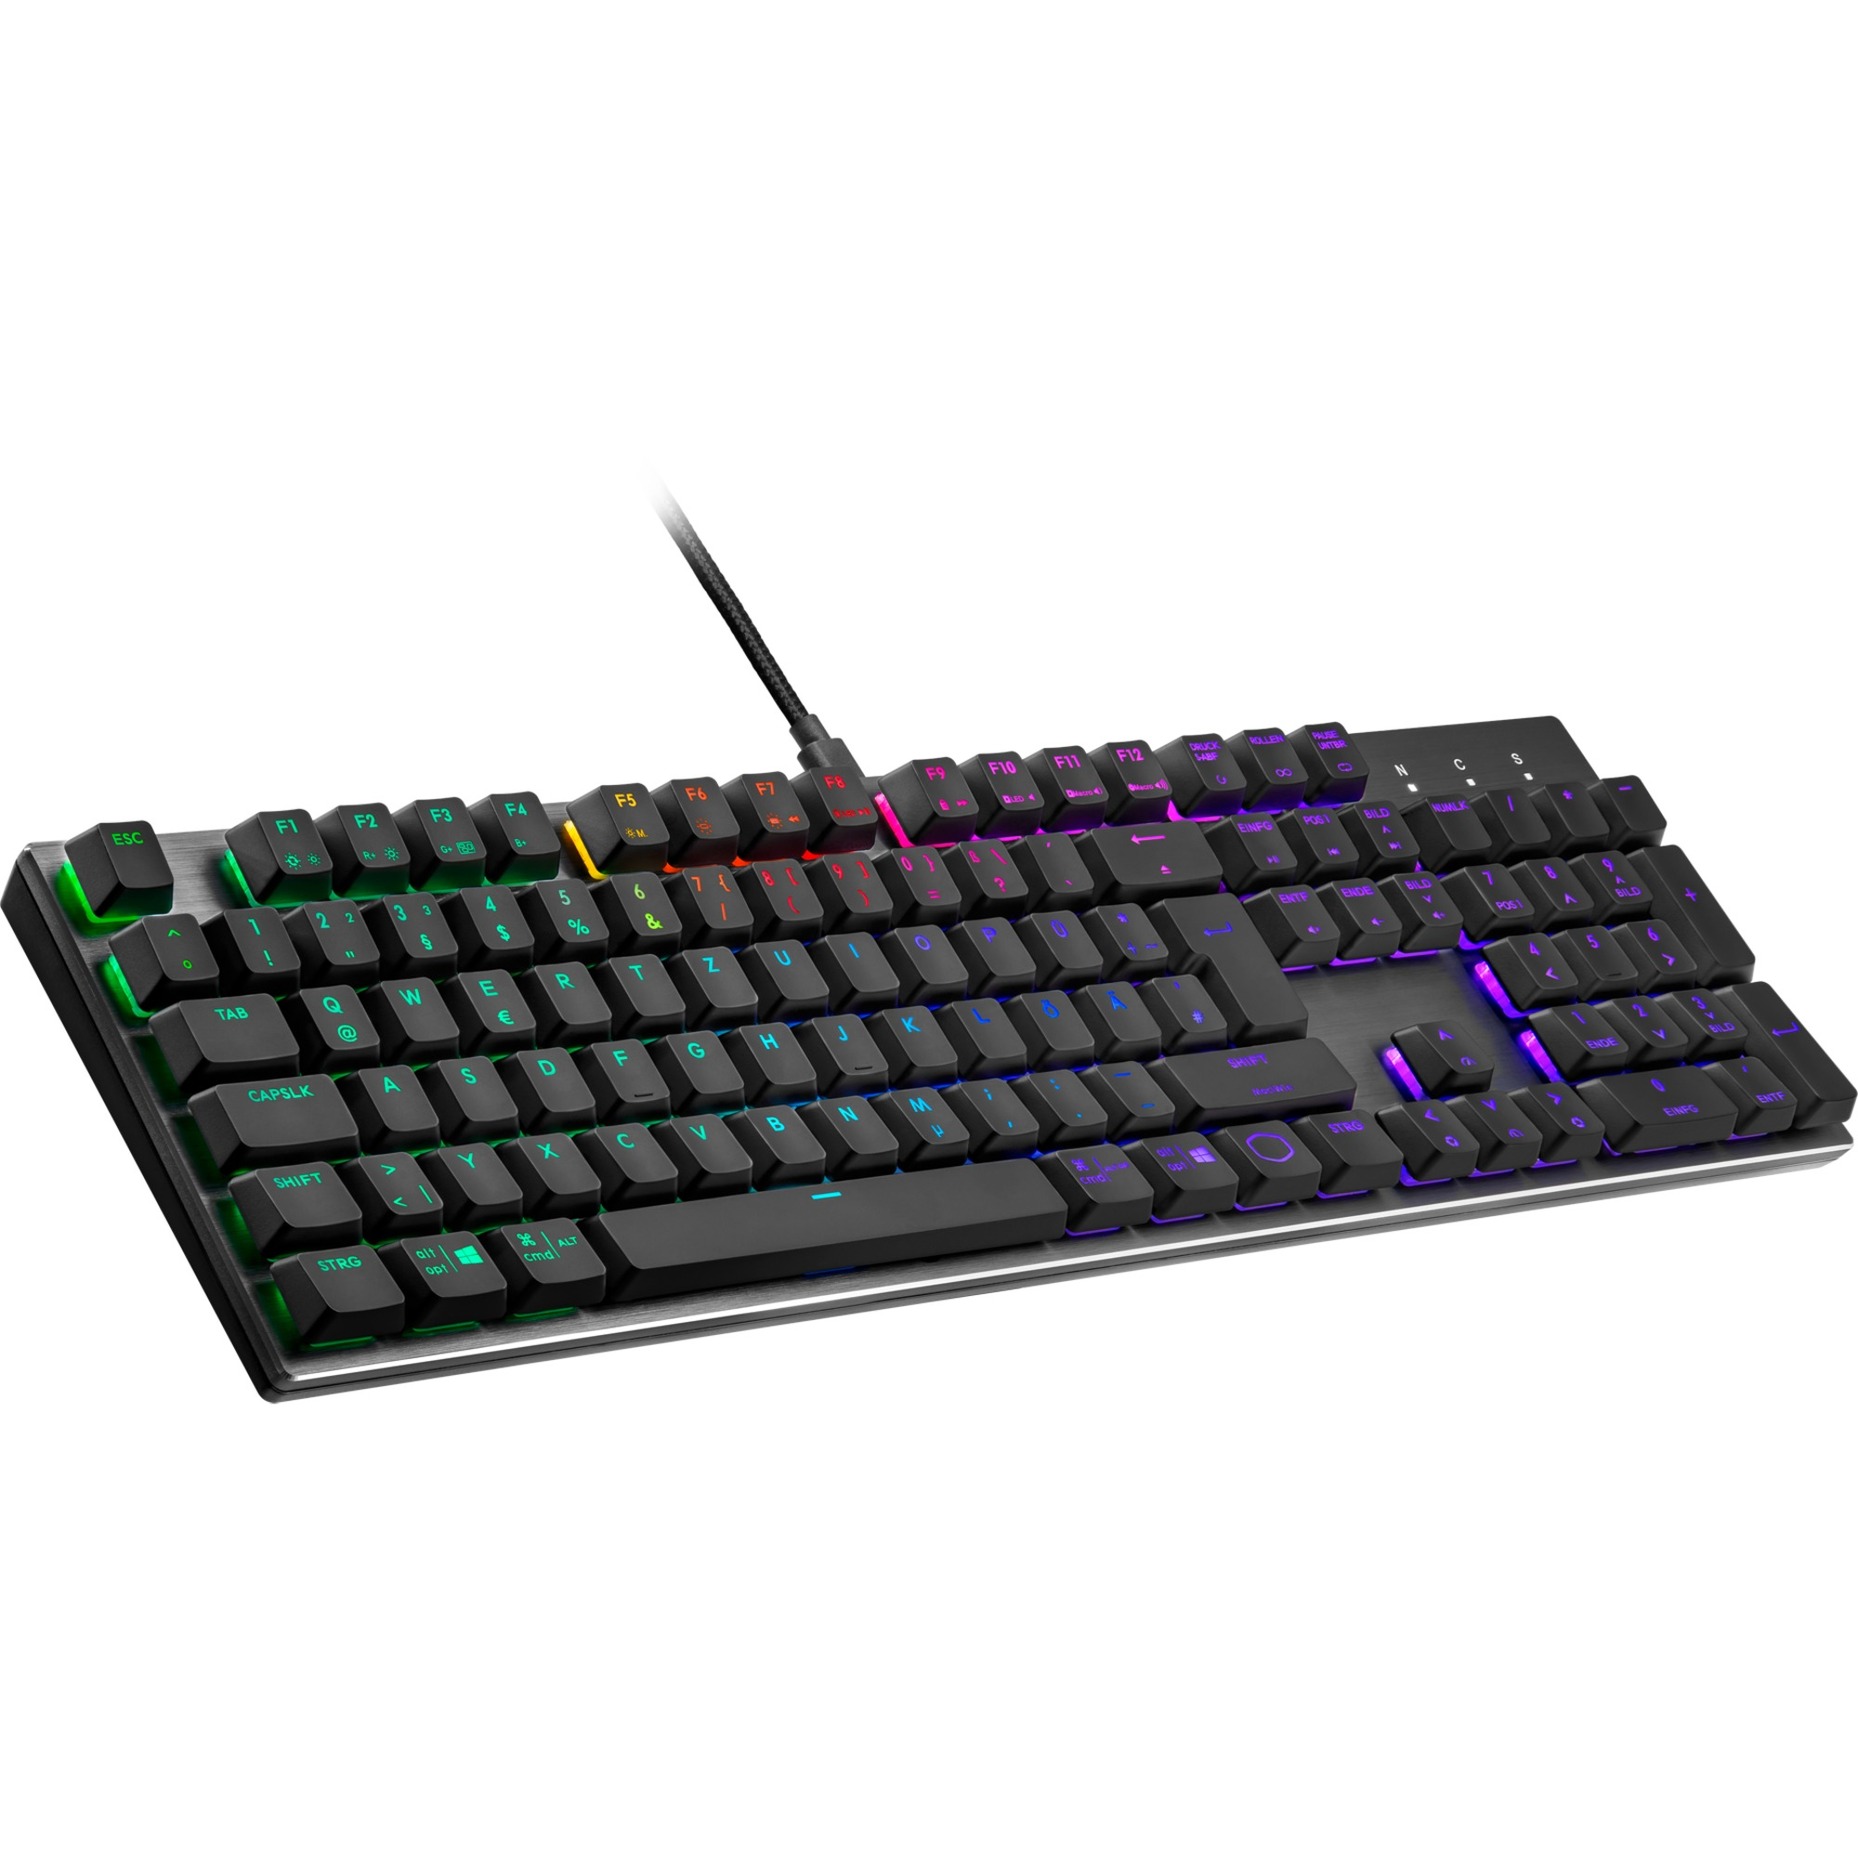 Image of Alternate - SK652, Gaming-Tastatur online einkaufen bei Alternate